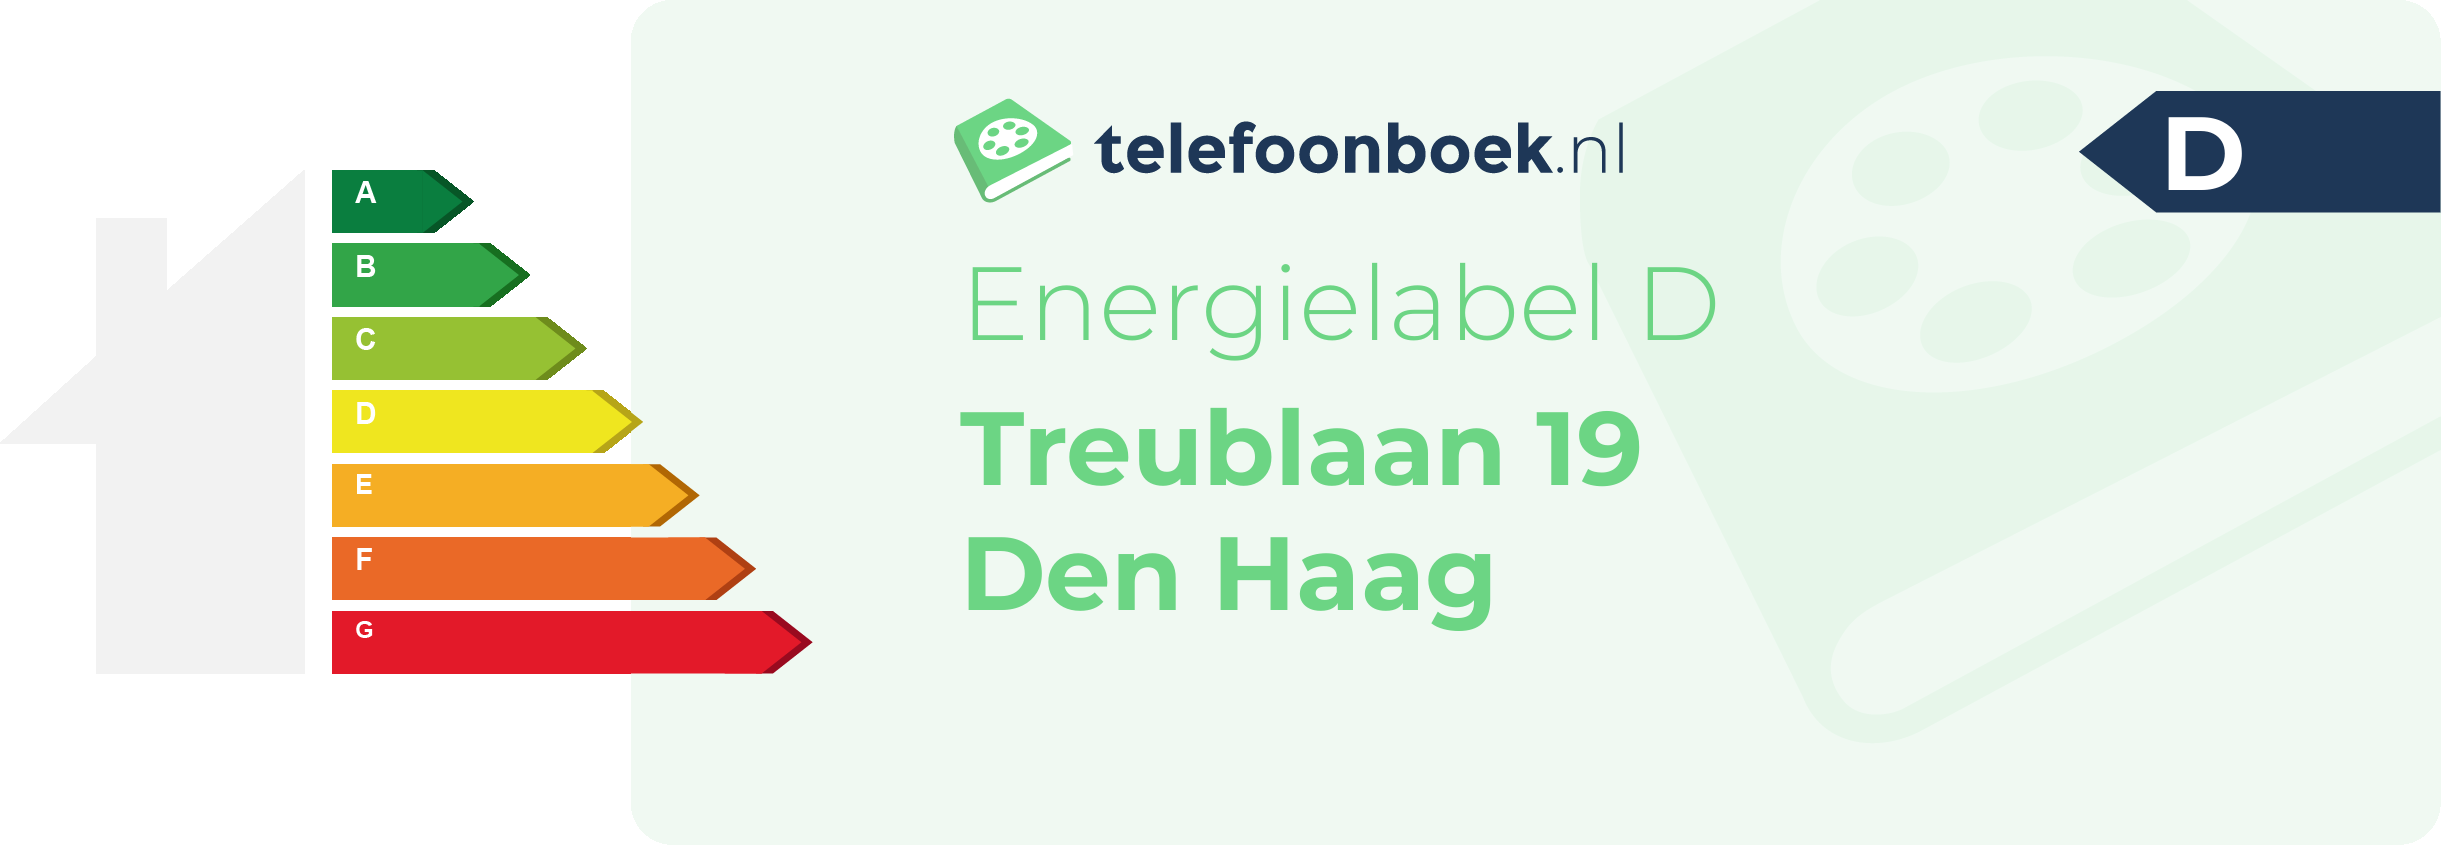 Energielabel Treublaan 19 Den Haag